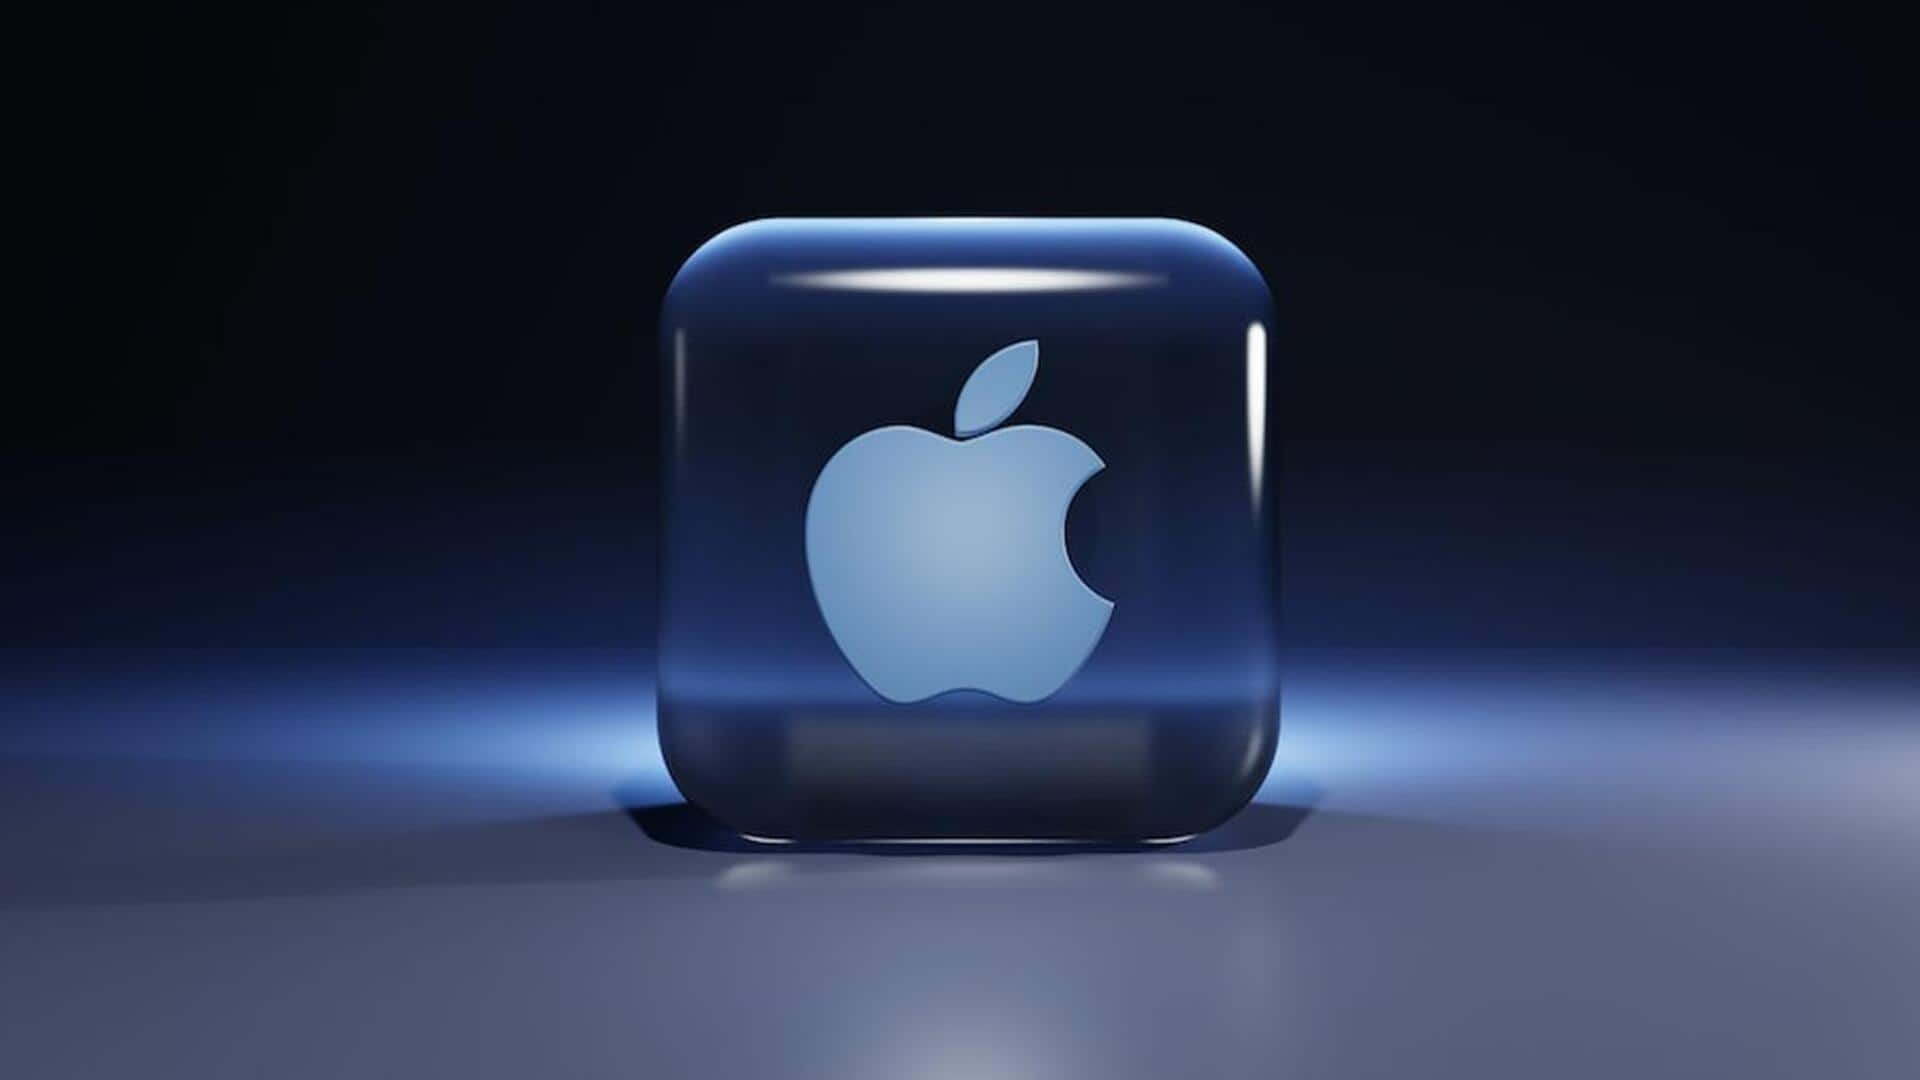 ऐपल ने की दिवाली सेल की घोषणा; आईफोन, मैकबुक और आईपैड पर पाएं भारी छूट